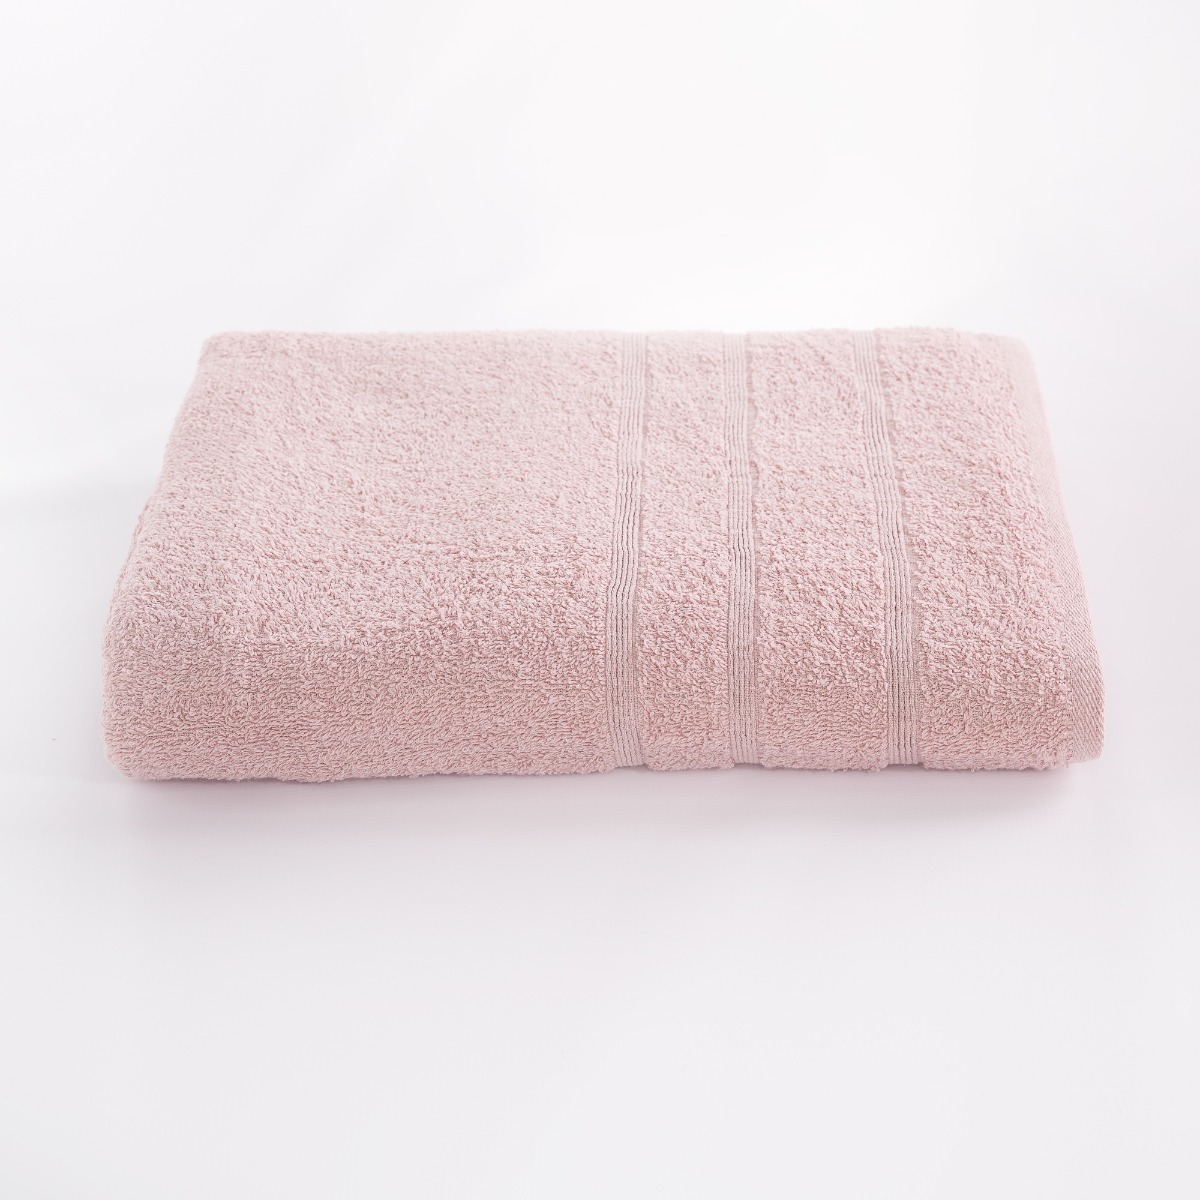 Ambient Bath Towel cipria Maè